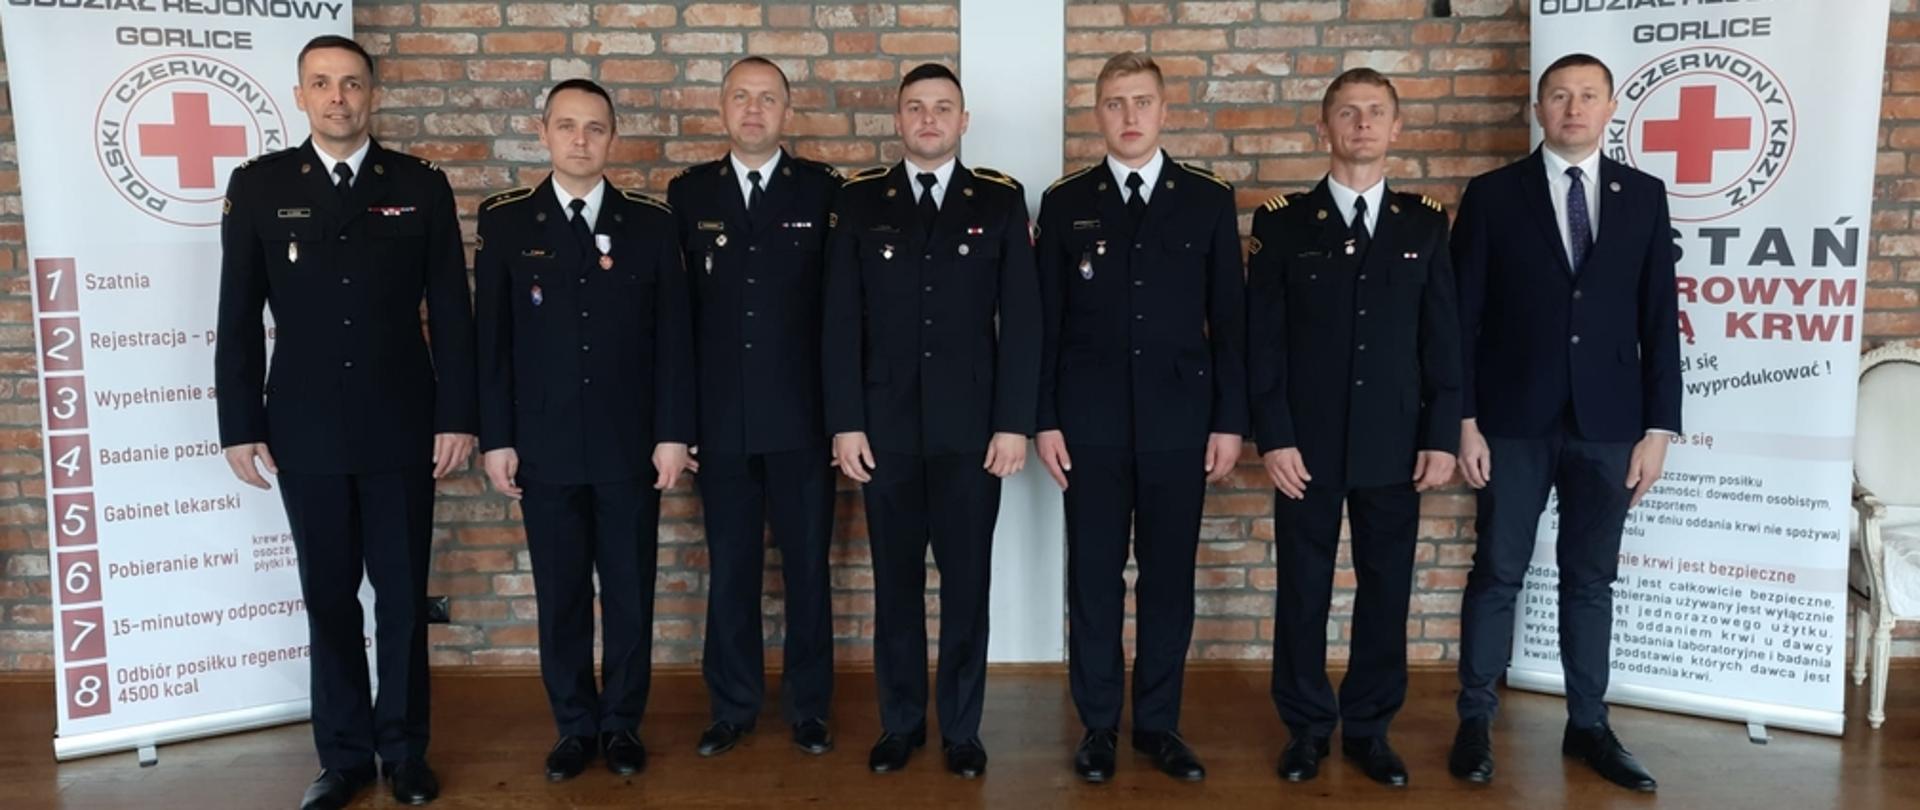 Na zajęciu widoczni wyróżnieni strażacy w mundurach wyjściowych wraz z Komendantem Powiatowym PSP w Gorlicach uczestniczący w Gali Honorowych Dawców Krwiodawców powiatu gorlickiego. 